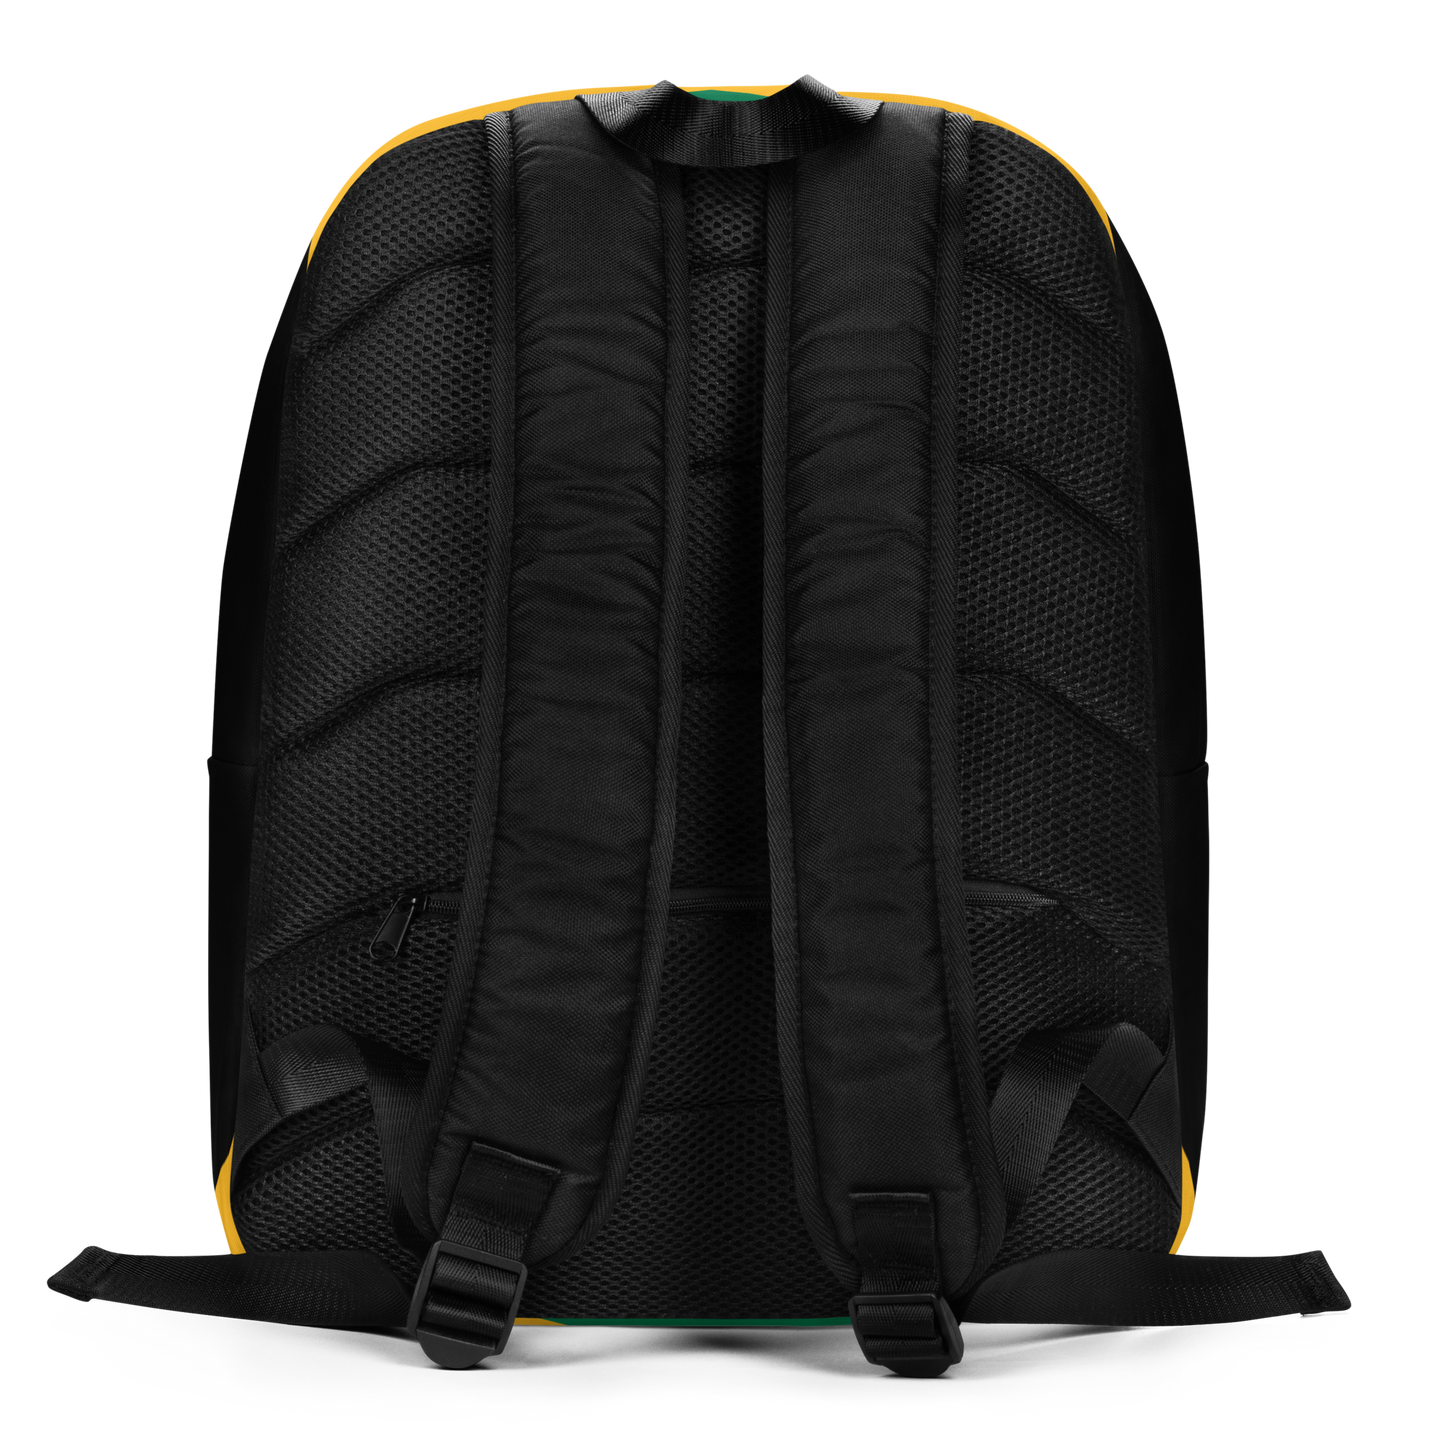 Jamaica Minimalist Backpack